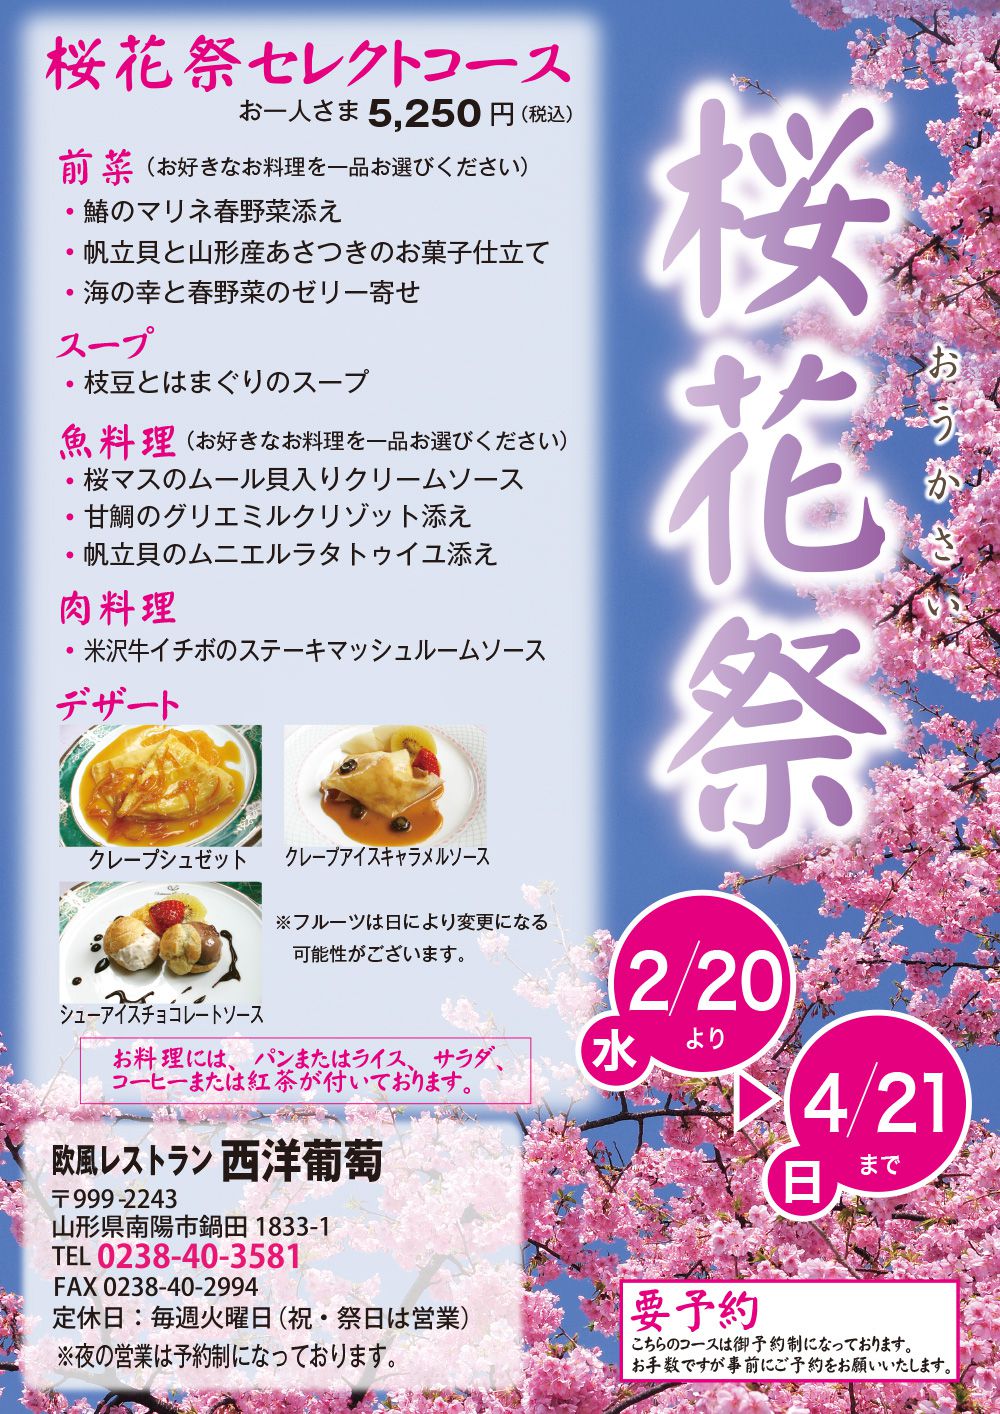 歓送迎会におすすめの「桜花祭」